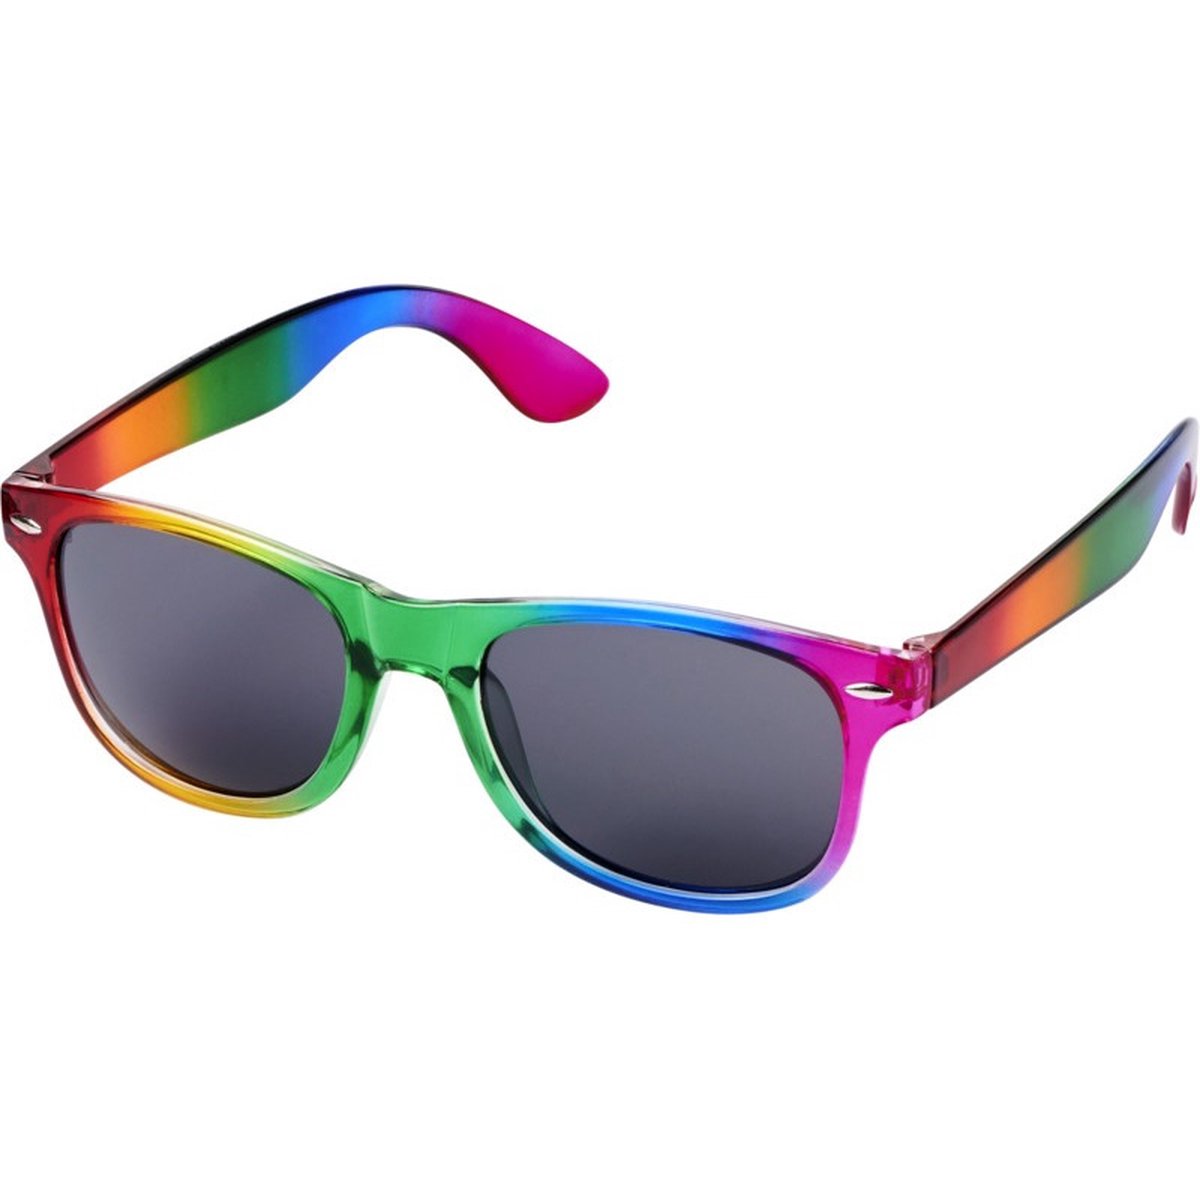 10x Regenboog zonnebrillen retro voor volwassenen - Regenboog zonnebrillen dames/heren